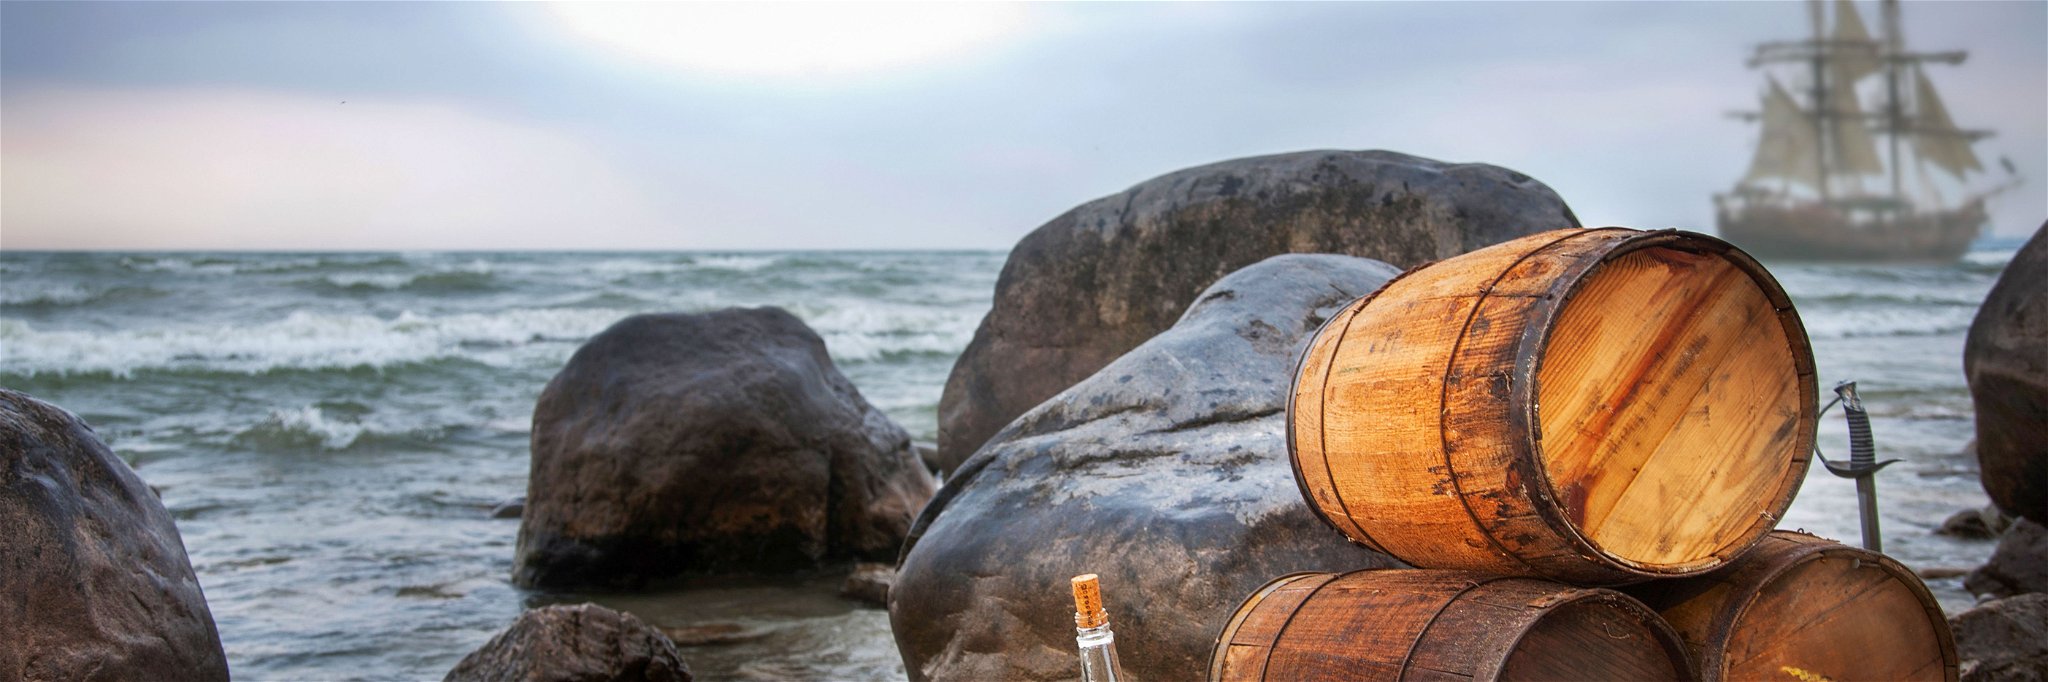 Rum ist mehr als ein Piratenschnaps – das wissen auch heimische Brenner, die sich der Spirituose vermehrt widmen.